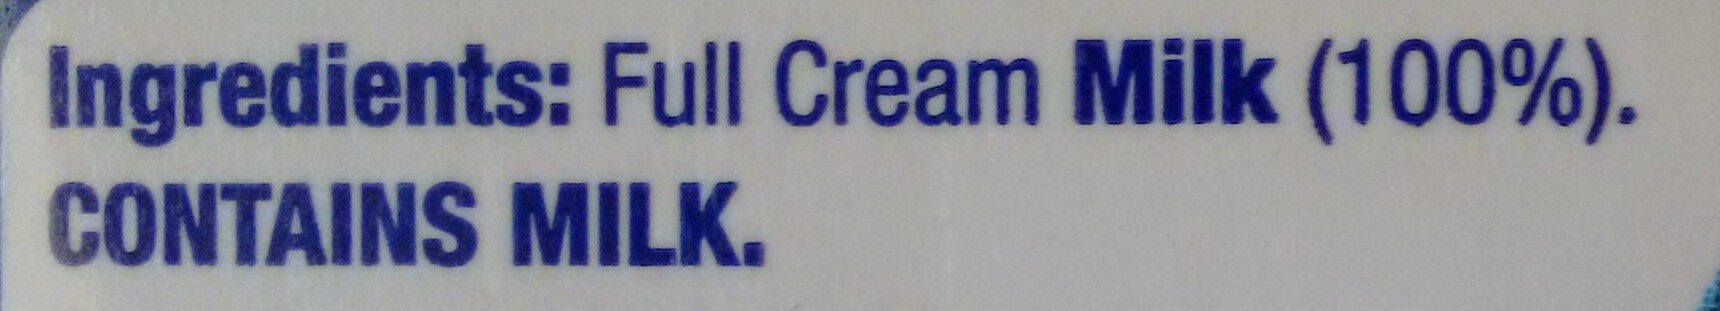 Full cream milk - Ingredients